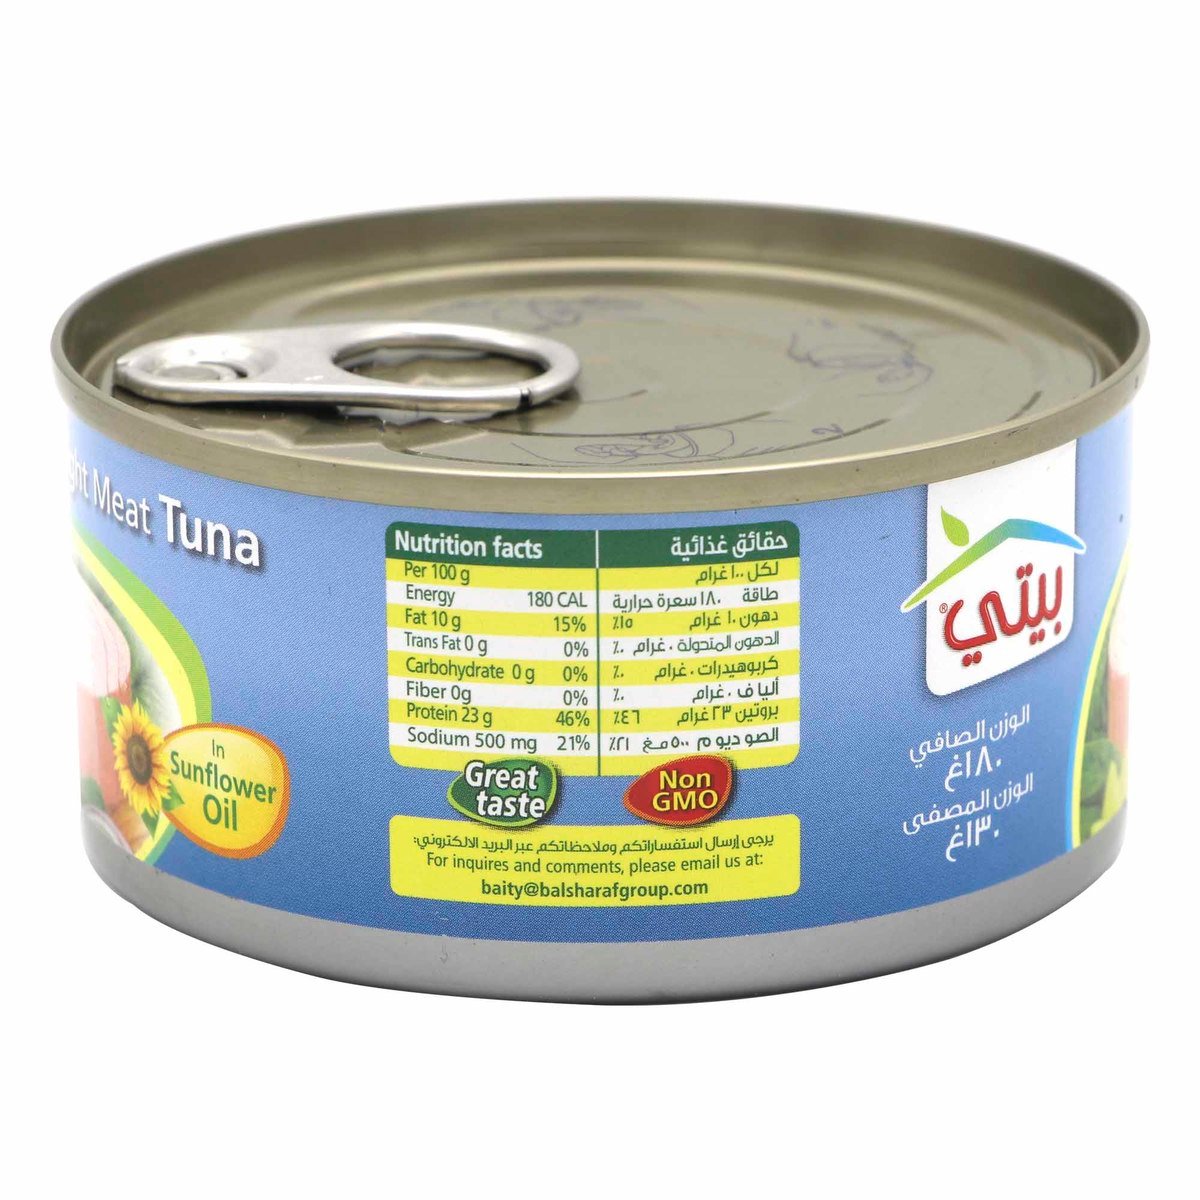 Baity Fancy Light Meat Tuna In Sunflower Oil 180g